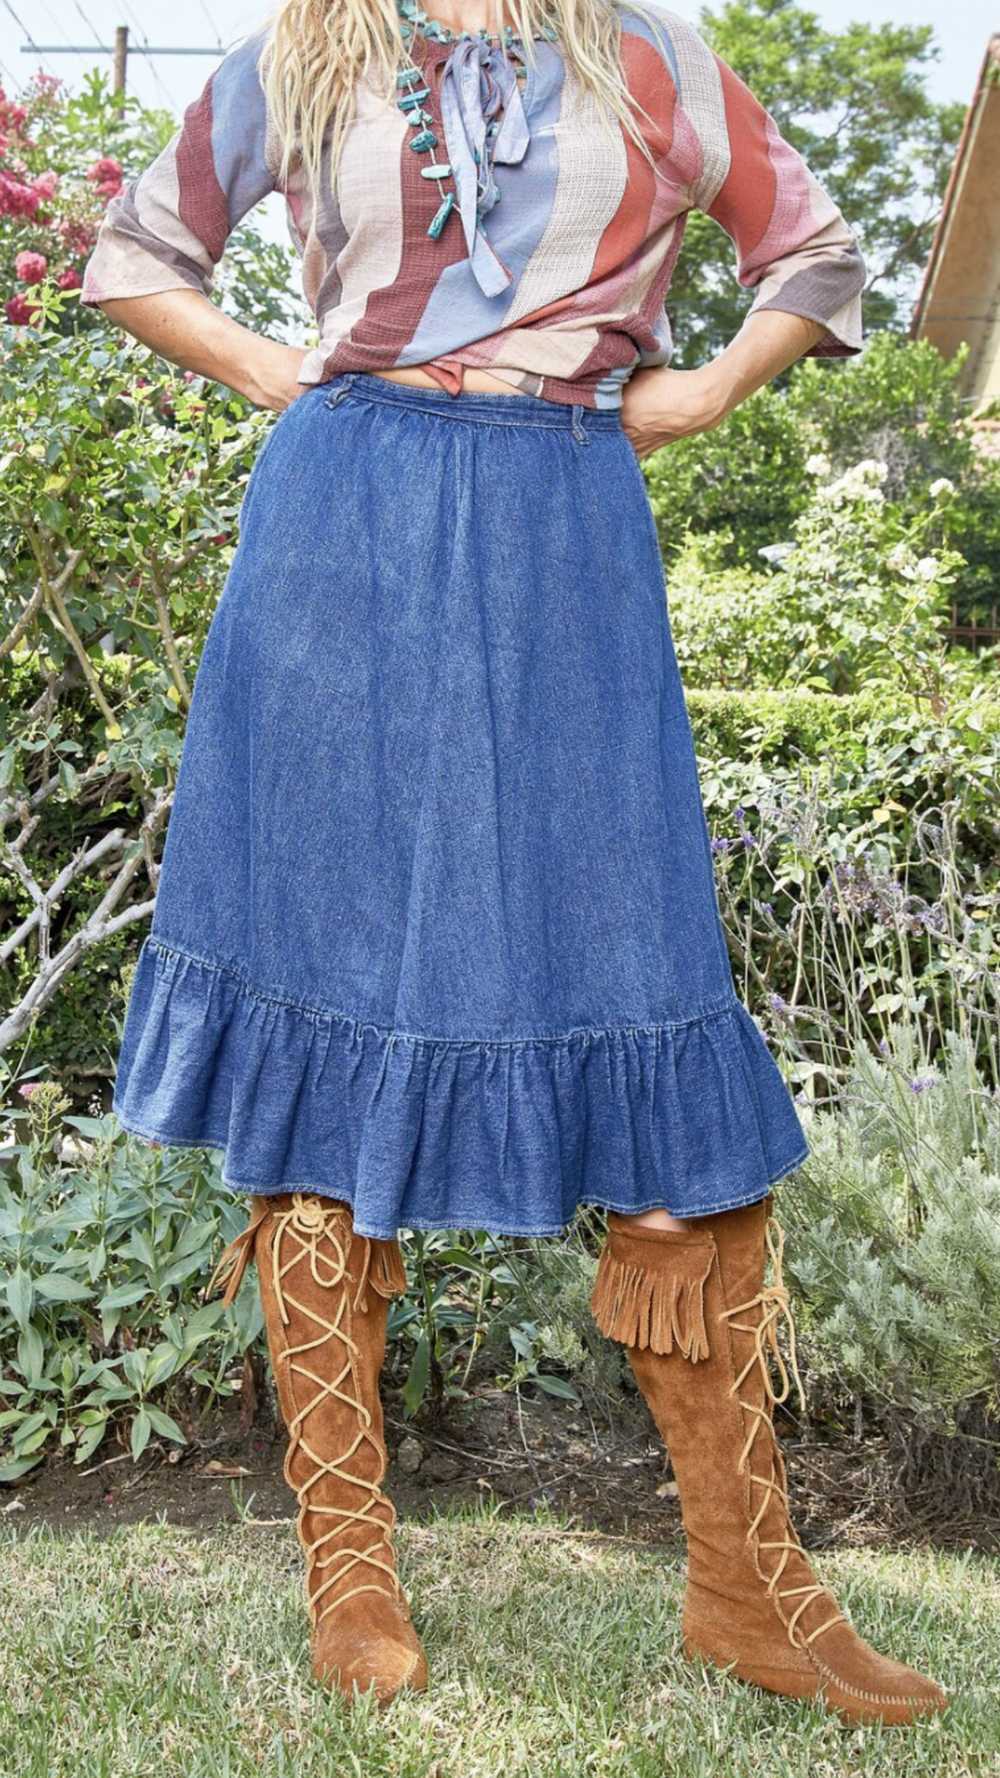 Vintage N'est-ce Pas? Denim Skirt with Ruffle - image 1